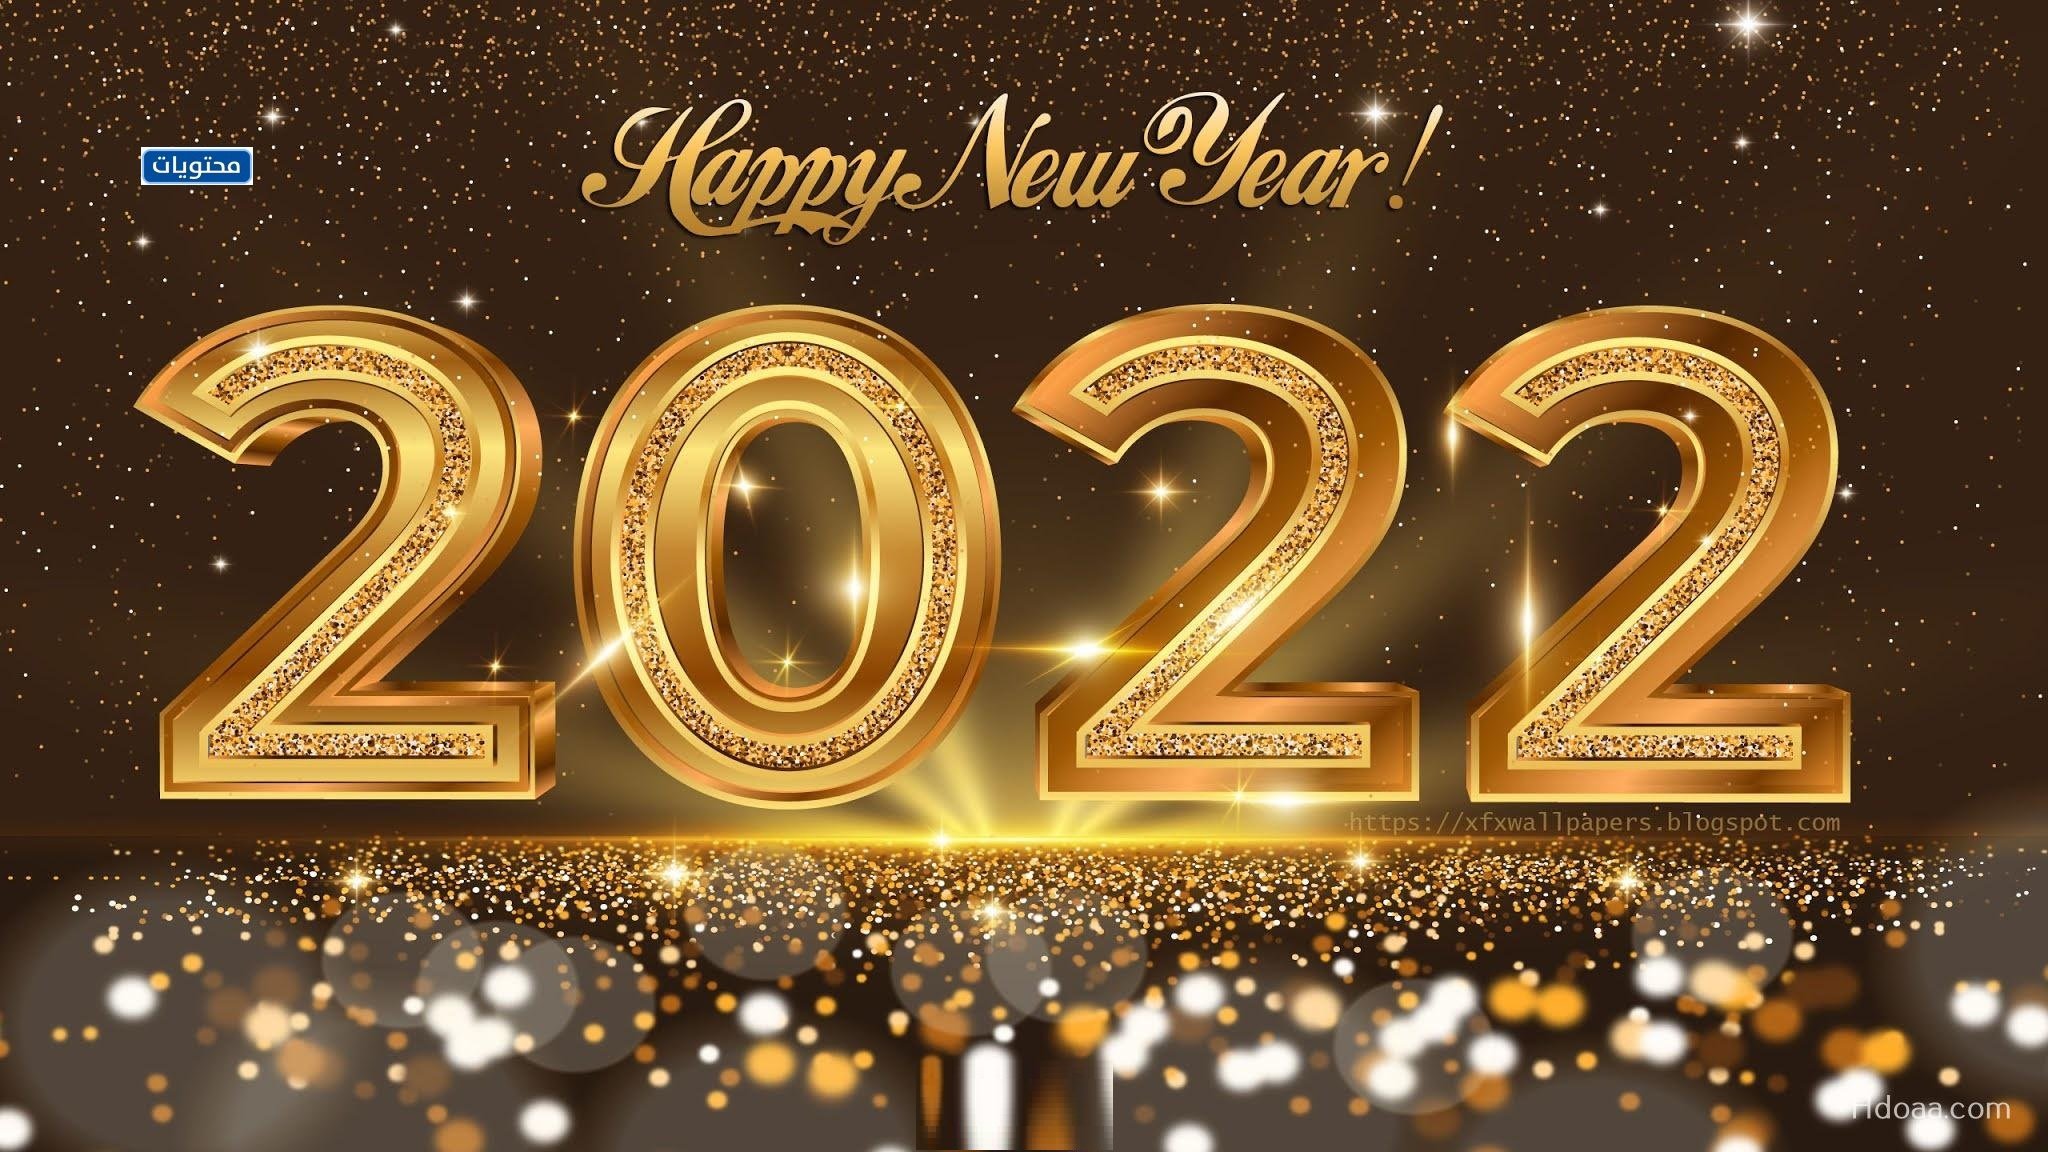 دعاء السنة الجديدة للاخ 2022مكتوبةرسائل معايدة لاخي بمناسبة العام الجديد